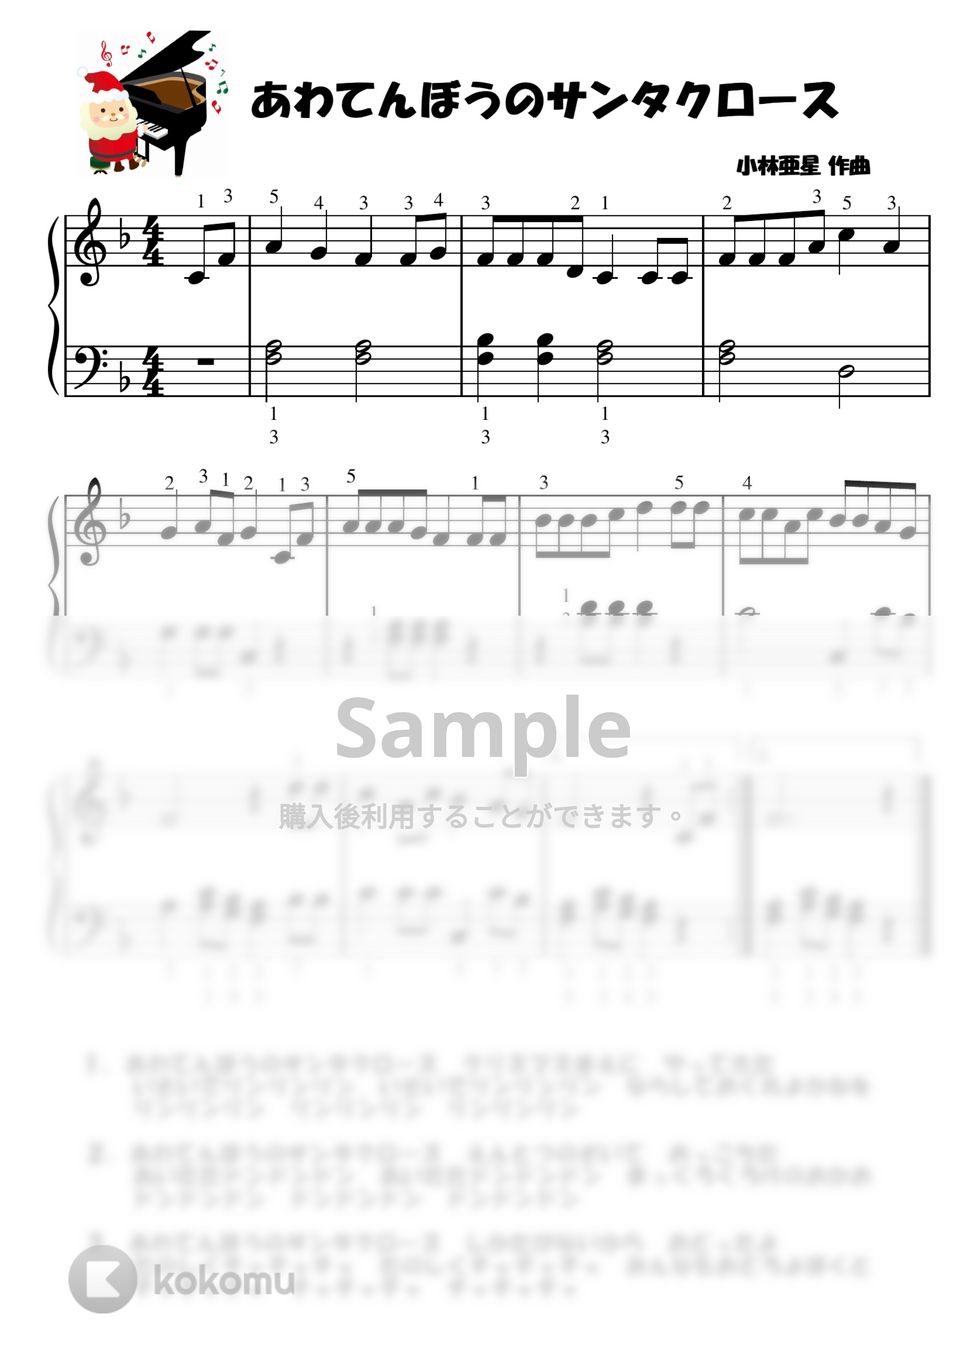 【初級】あわてんぼうのサンタクロース (クリスマス) by ピアノの先生の楽譜集